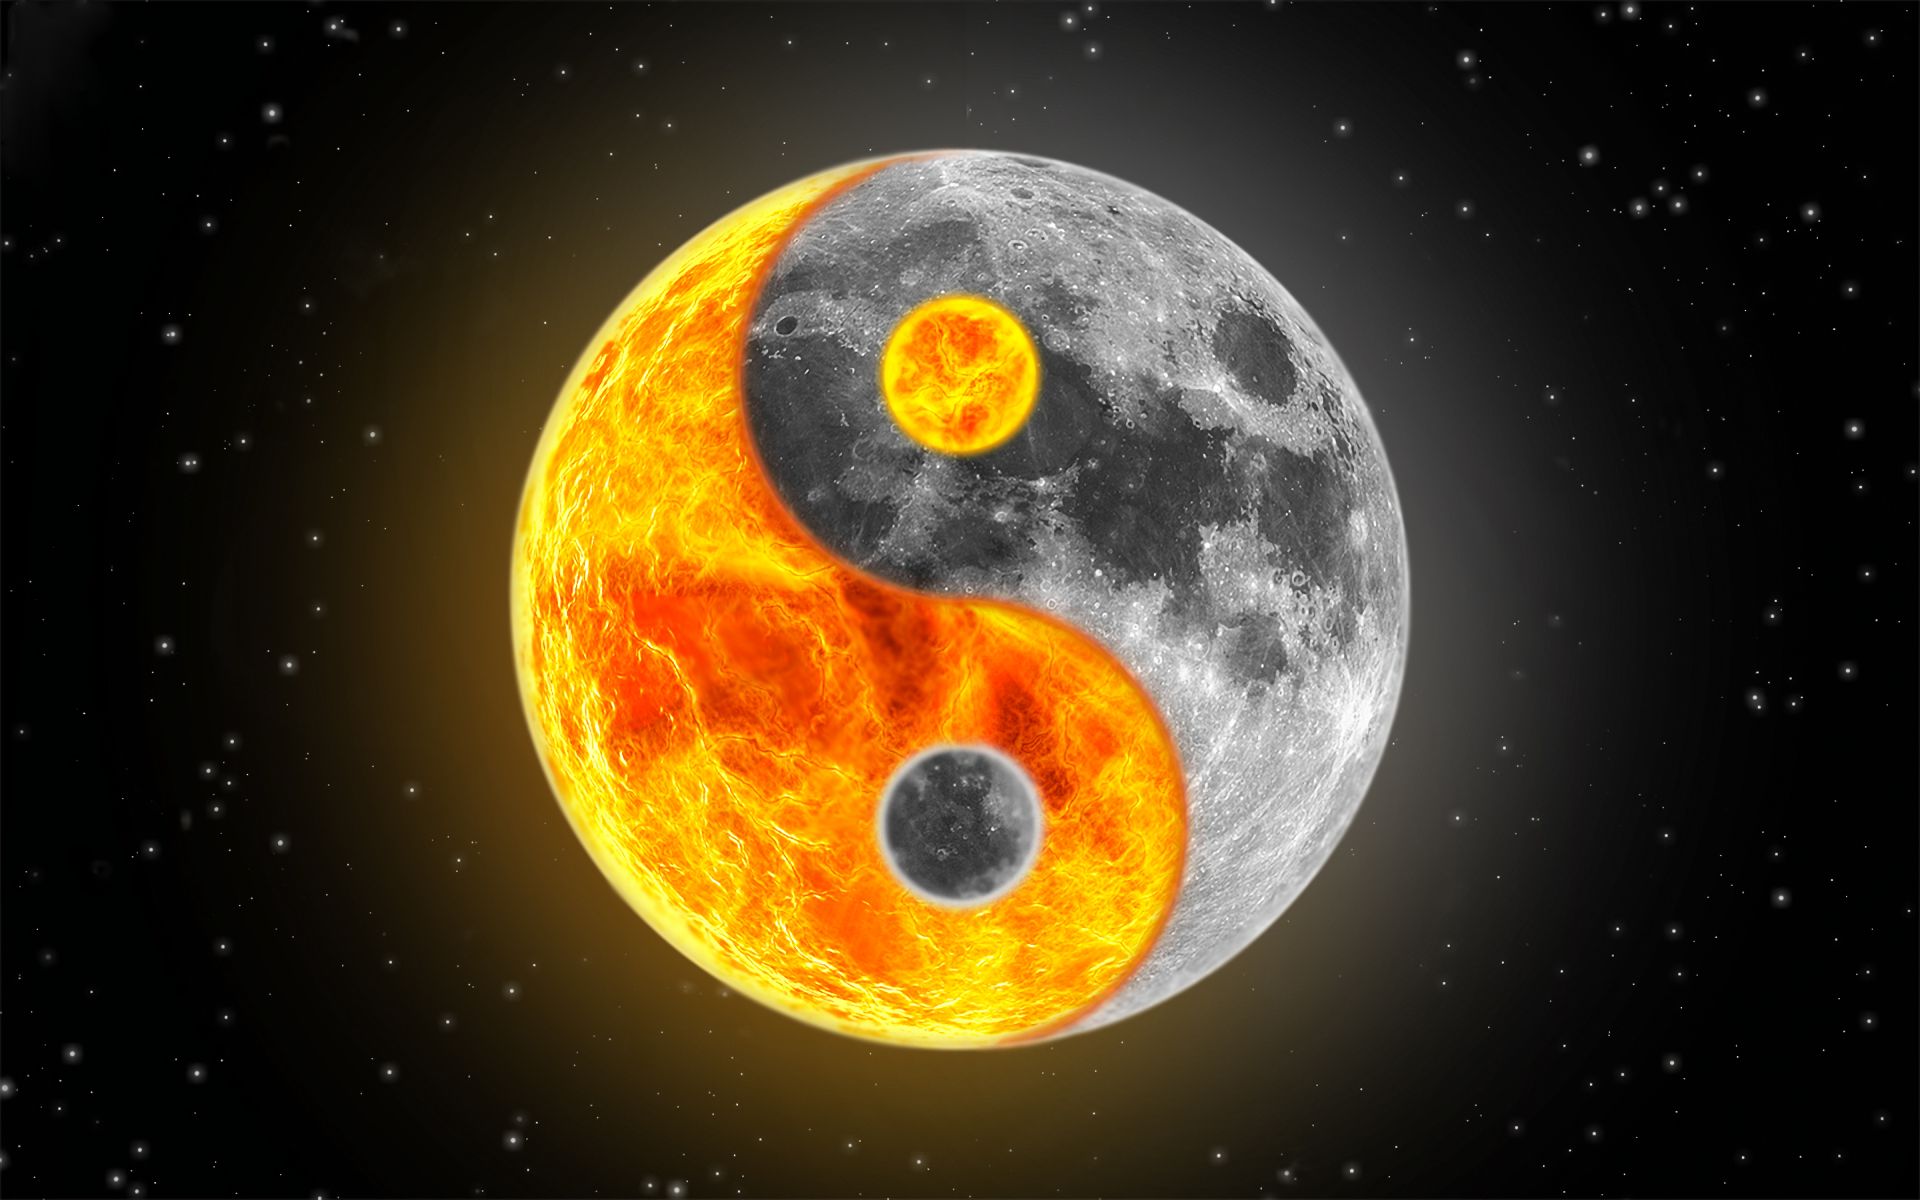 religious, yin & yang